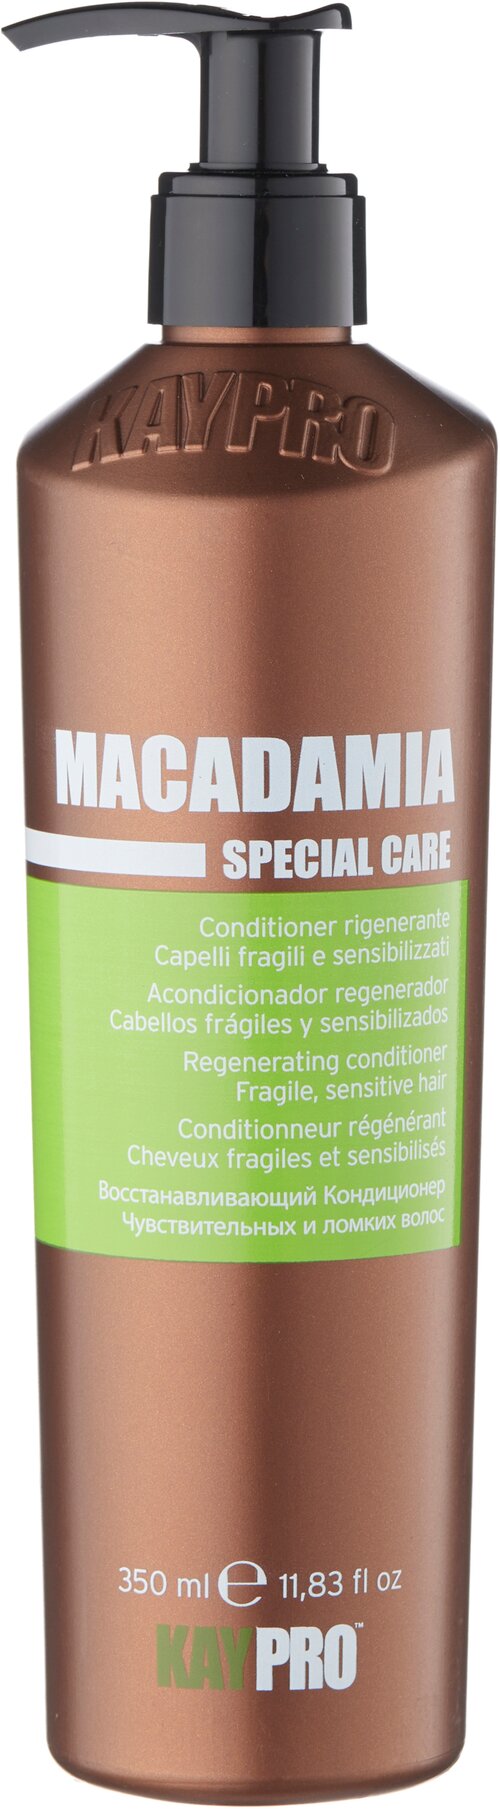 KayPro кондиционер Macadamia Special Care восстанавливающий для чувствительных и ломких волос, 350 мл